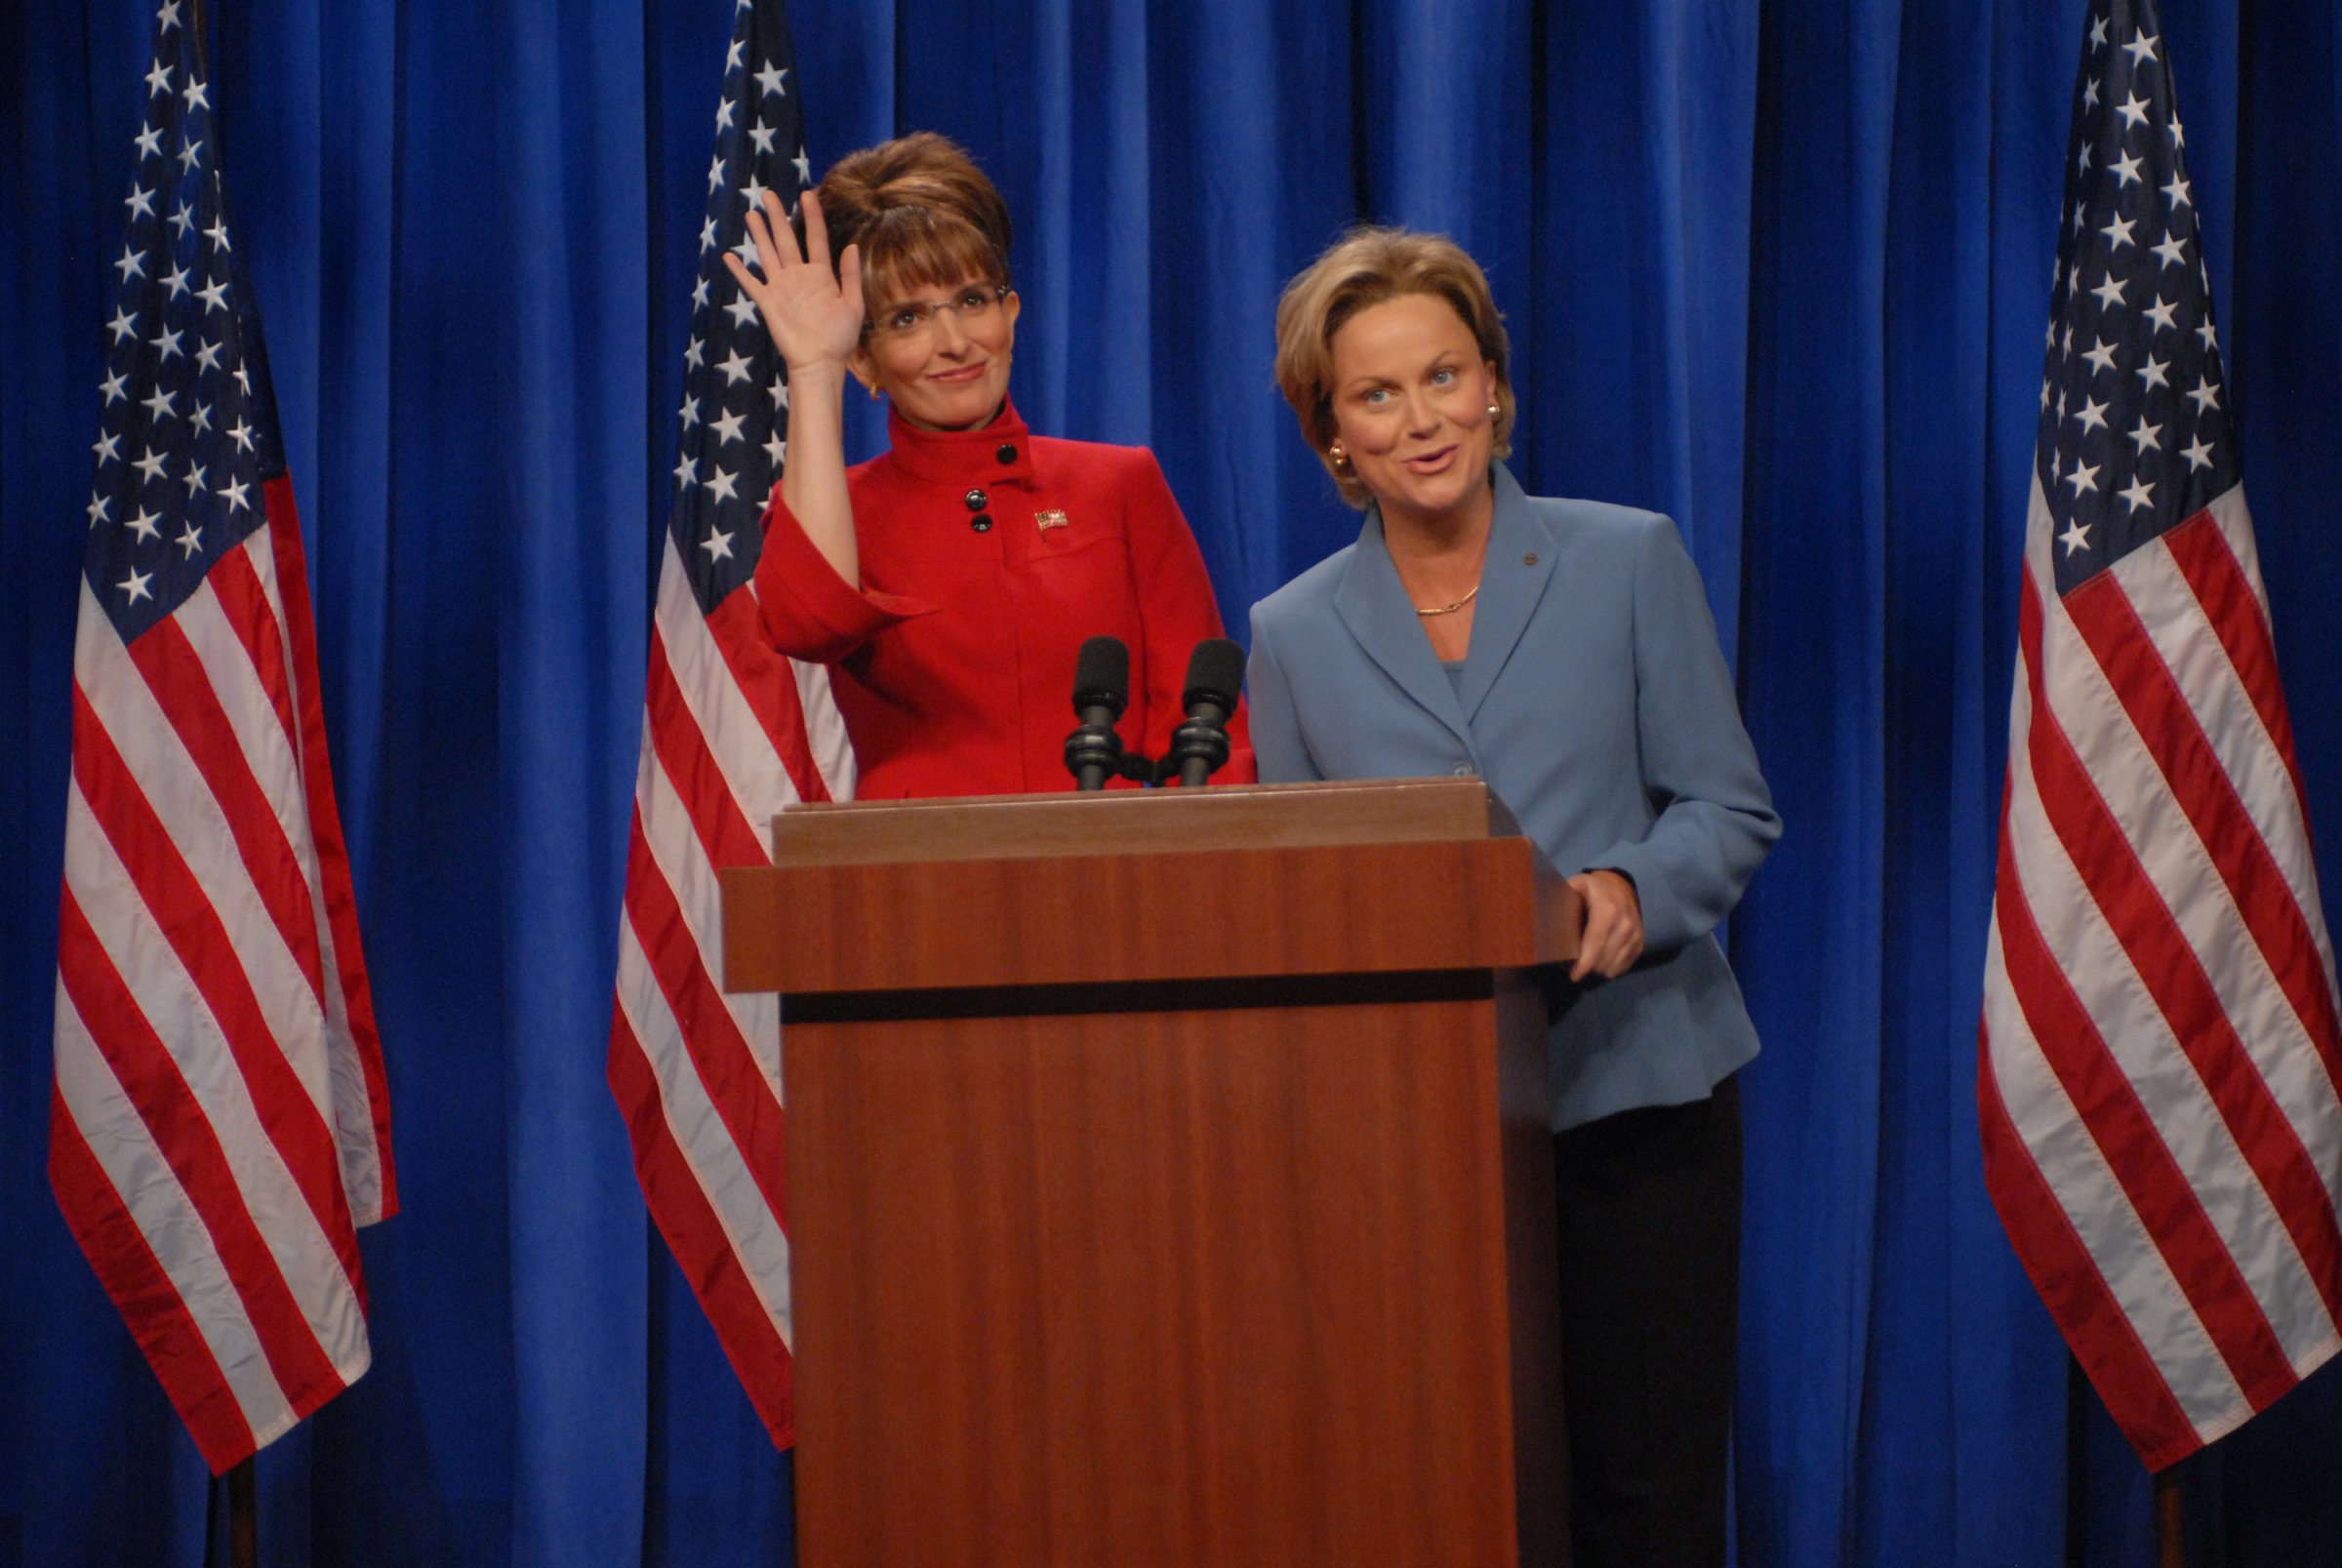 Tina Fey as Governor Sarah Palin, Amy Poehler as Senator Hillary Clinton during 'A Nonpartisan Message From Sarah Palin & Hillary Clinton' skit on Sept. 13, 2008.